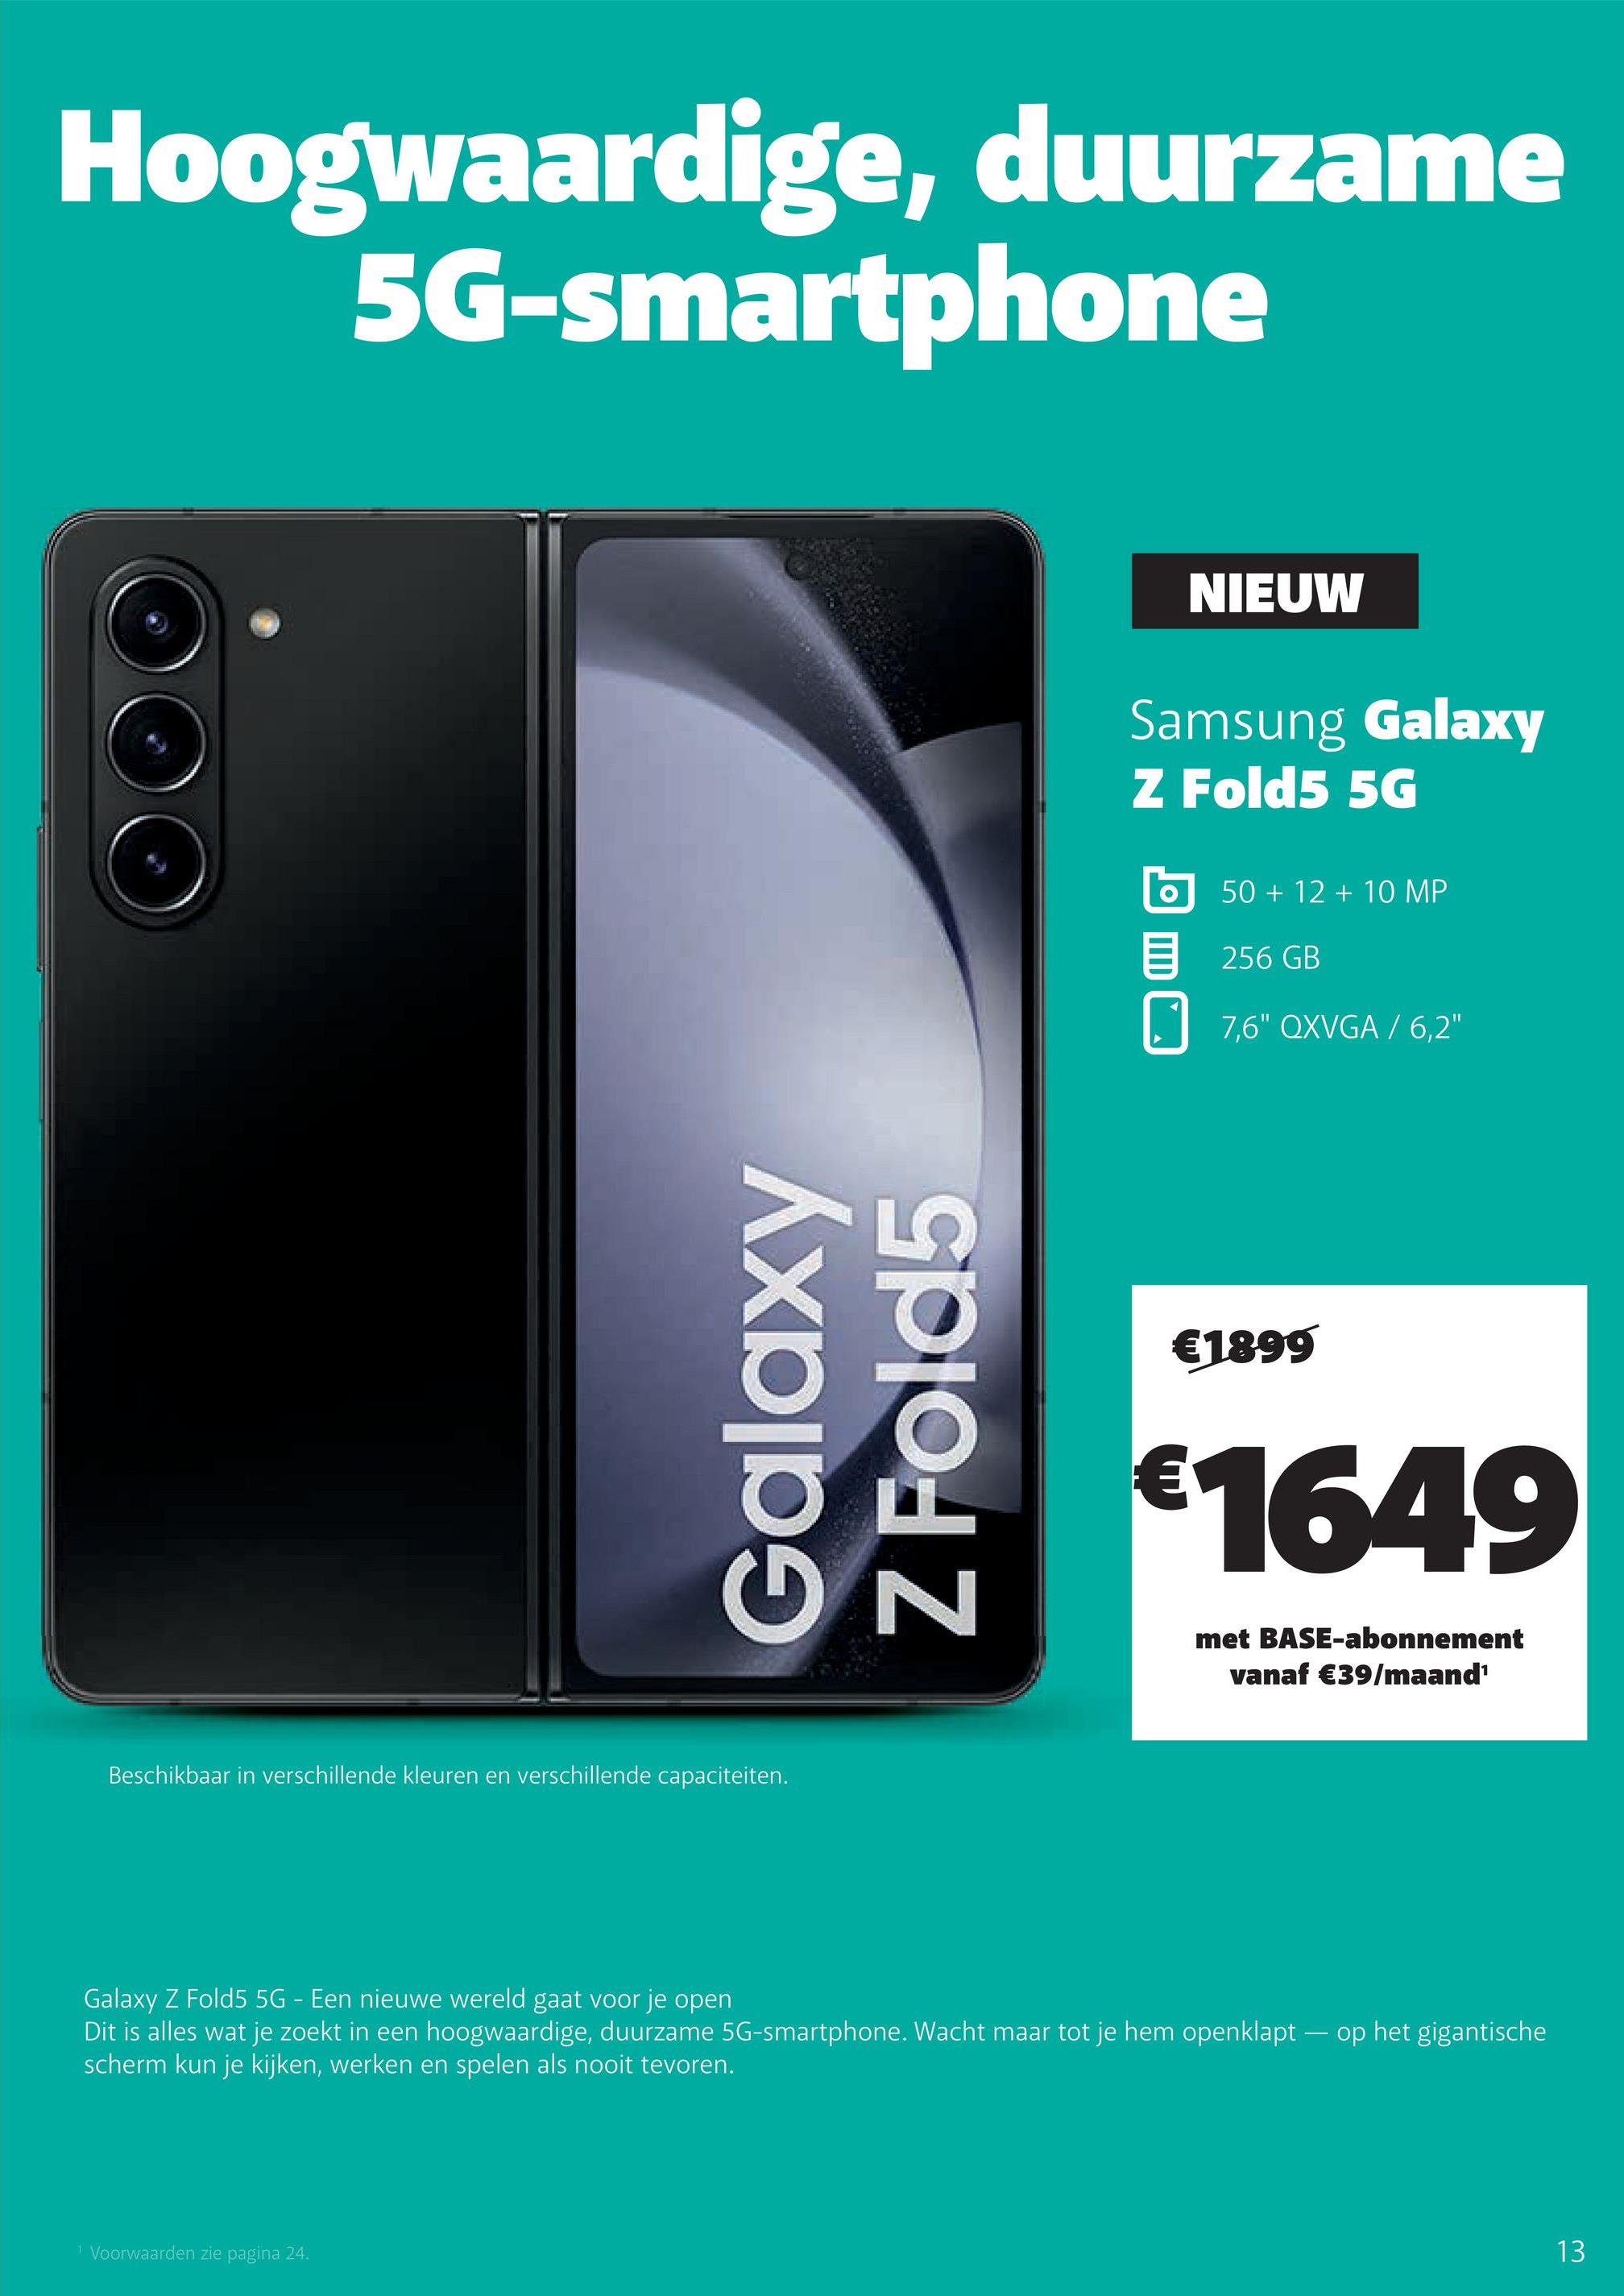 Hoogwaardige, duurzame
5G-smartphone
Galaxy
Z Fold5
Beschikbaar in verschillende kleuren en verschillende capaciteiten.
¹ Voorwaarden zie pagina 24.
NIEUW
Samsung Galaxy
Z Fold5 5G
O
50 + 12 + 10 MP
256 GB
7,6" QXVGA / 6,2"
€1899
€1649
met BASE-abonnement
vanaf €39/maand¹
Galaxy Z Fold5 5G - Een nieuwe wereld gaat voor je open
Dit is alles wat je zoekt in een hoogwaardige, duurzame 5G-smartphone. Wacht maar tot je hem openklapt op het gigantische
scherm kun je kijken, werken en spelen als nooit tevoren.
13